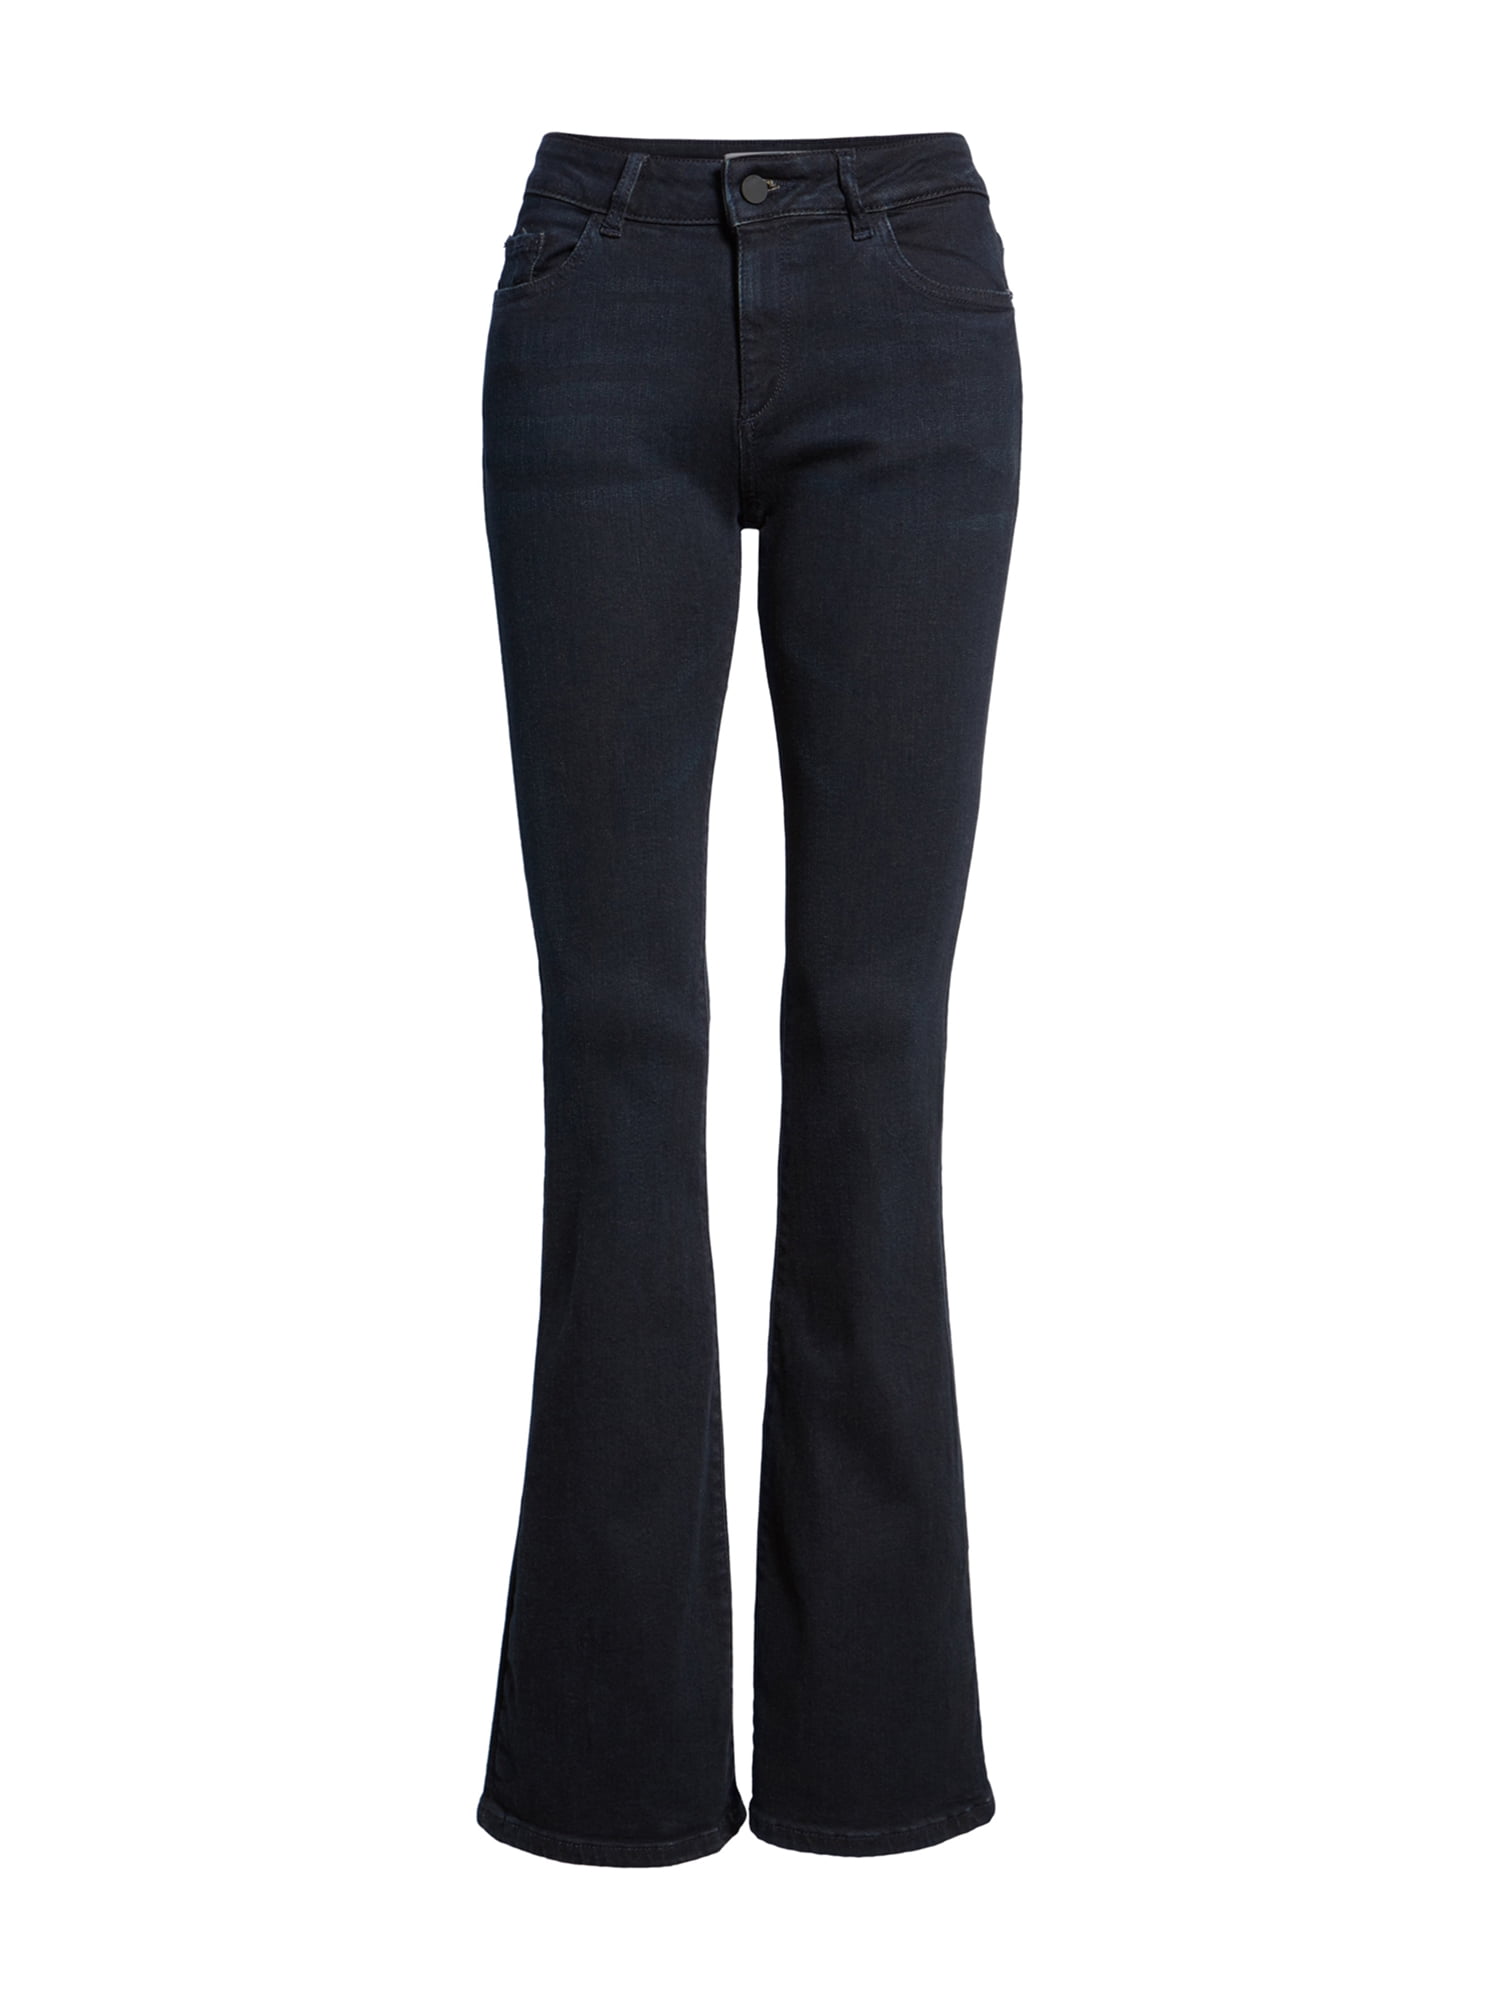 DL1961 Womens Bridget Boot Cut Jeans darkblue 29x33 | Walmart Canada